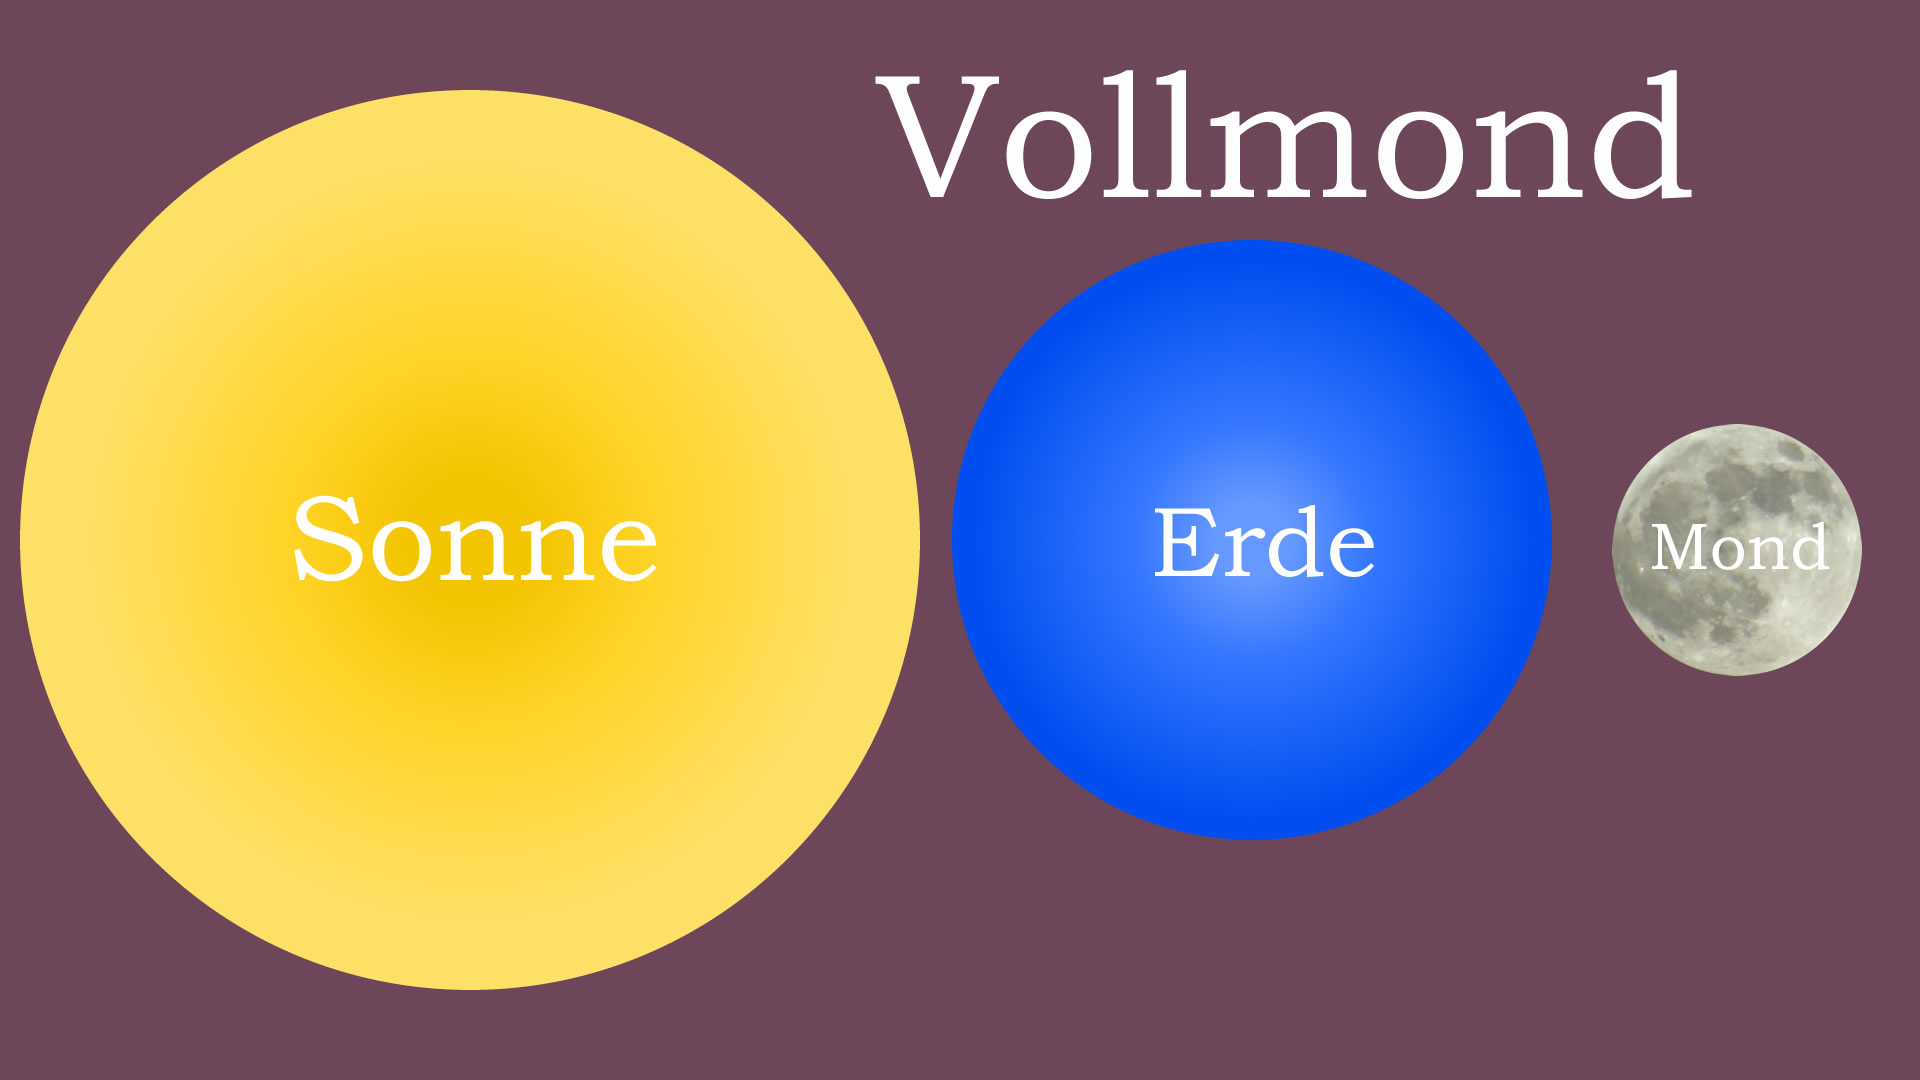 Vollmond Phase